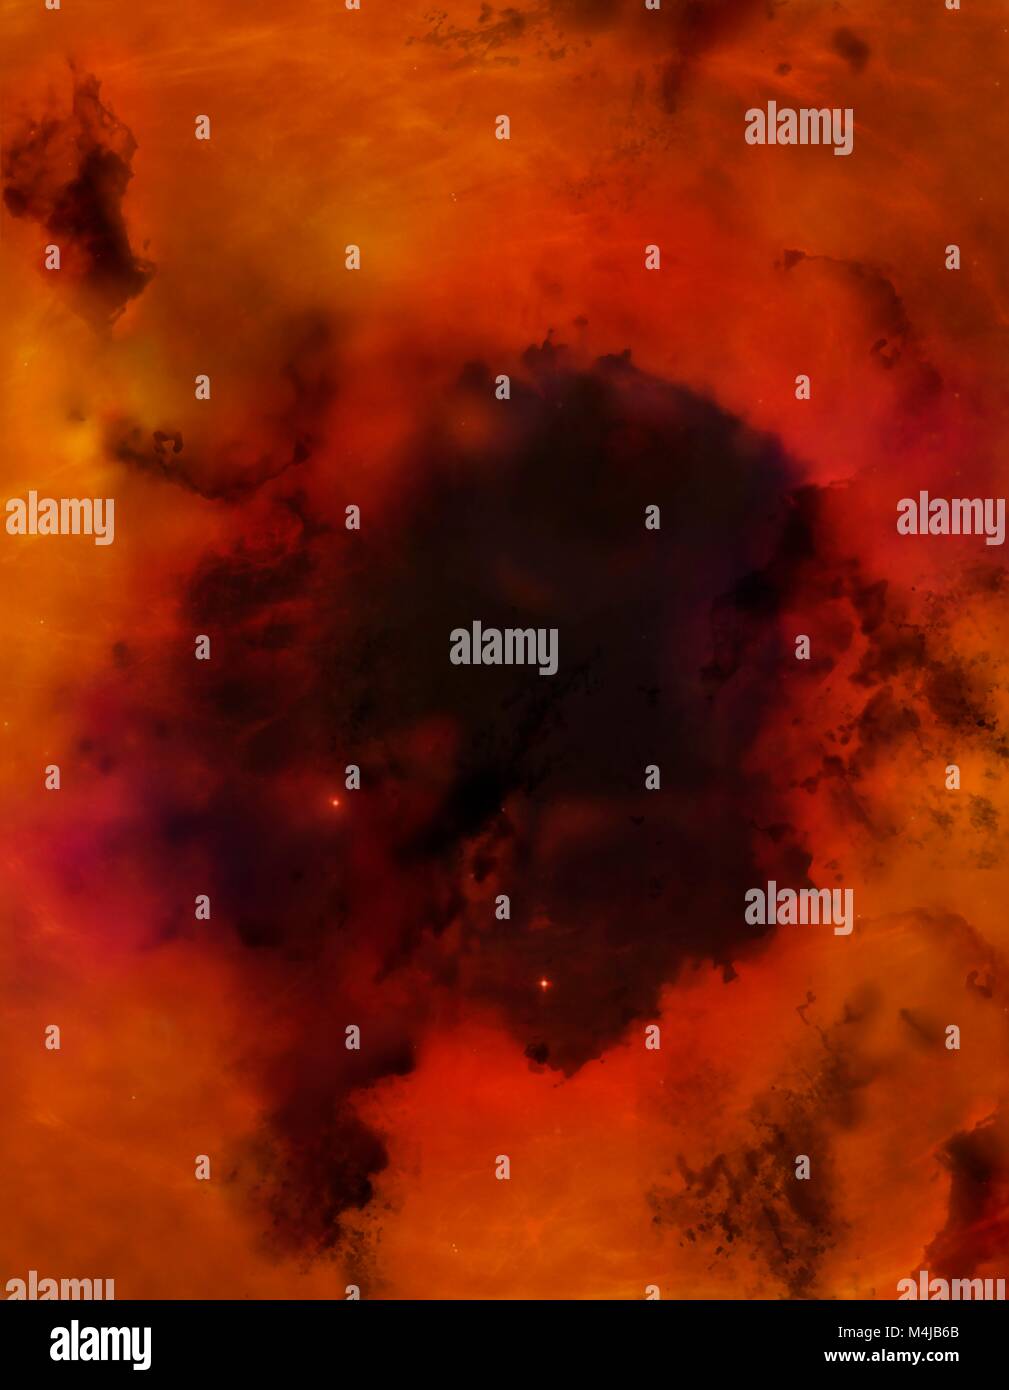 Bok globule. Computer Artwork von einer kleinen dunklen Nebel, als Bok globule, einer der Orte, an denen stars Form bekannt. Der rote Hintergrund ist Teil einer größeren Emissionsnebel, glühend wie das Wasserstoffgas in es erwärmt. Bok-globule sind relativ klein, nur ein Jahr oder so über, und kälter und im Staub, die reicher sind als andere Nebeln. Stockfoto